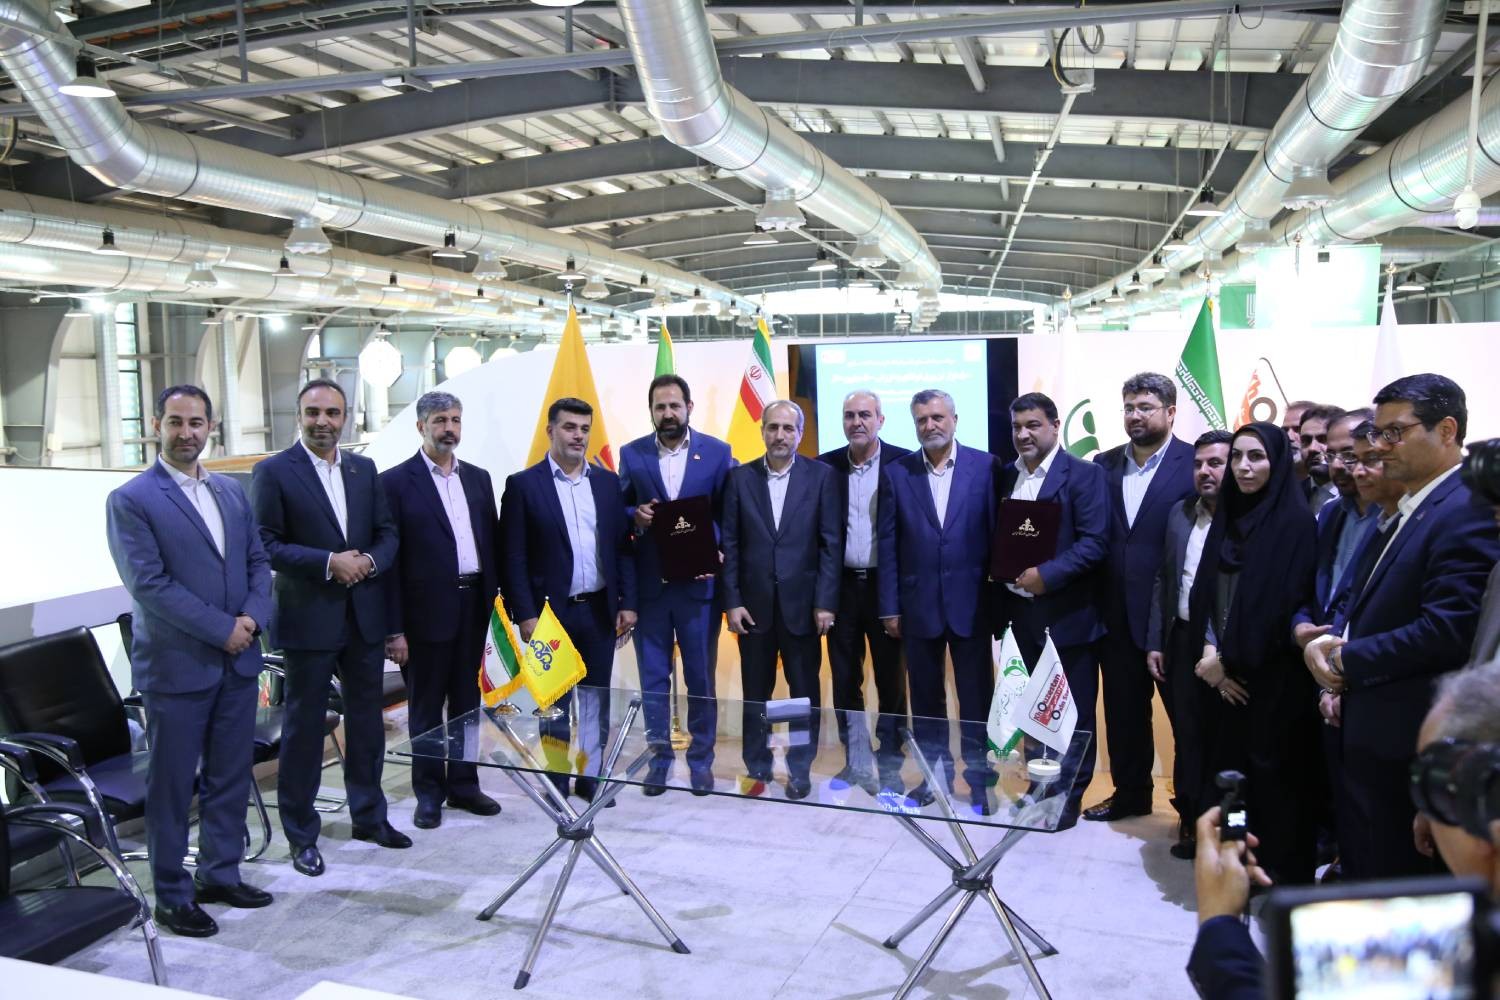 تبلور تکیه بر توان داخلی بر اساس توافق بین صندوق بازنشستگی کشوری و شرکت ملی گاز ایران در نمایشگاه بین المللی نفت، گاز و پتروشیمی